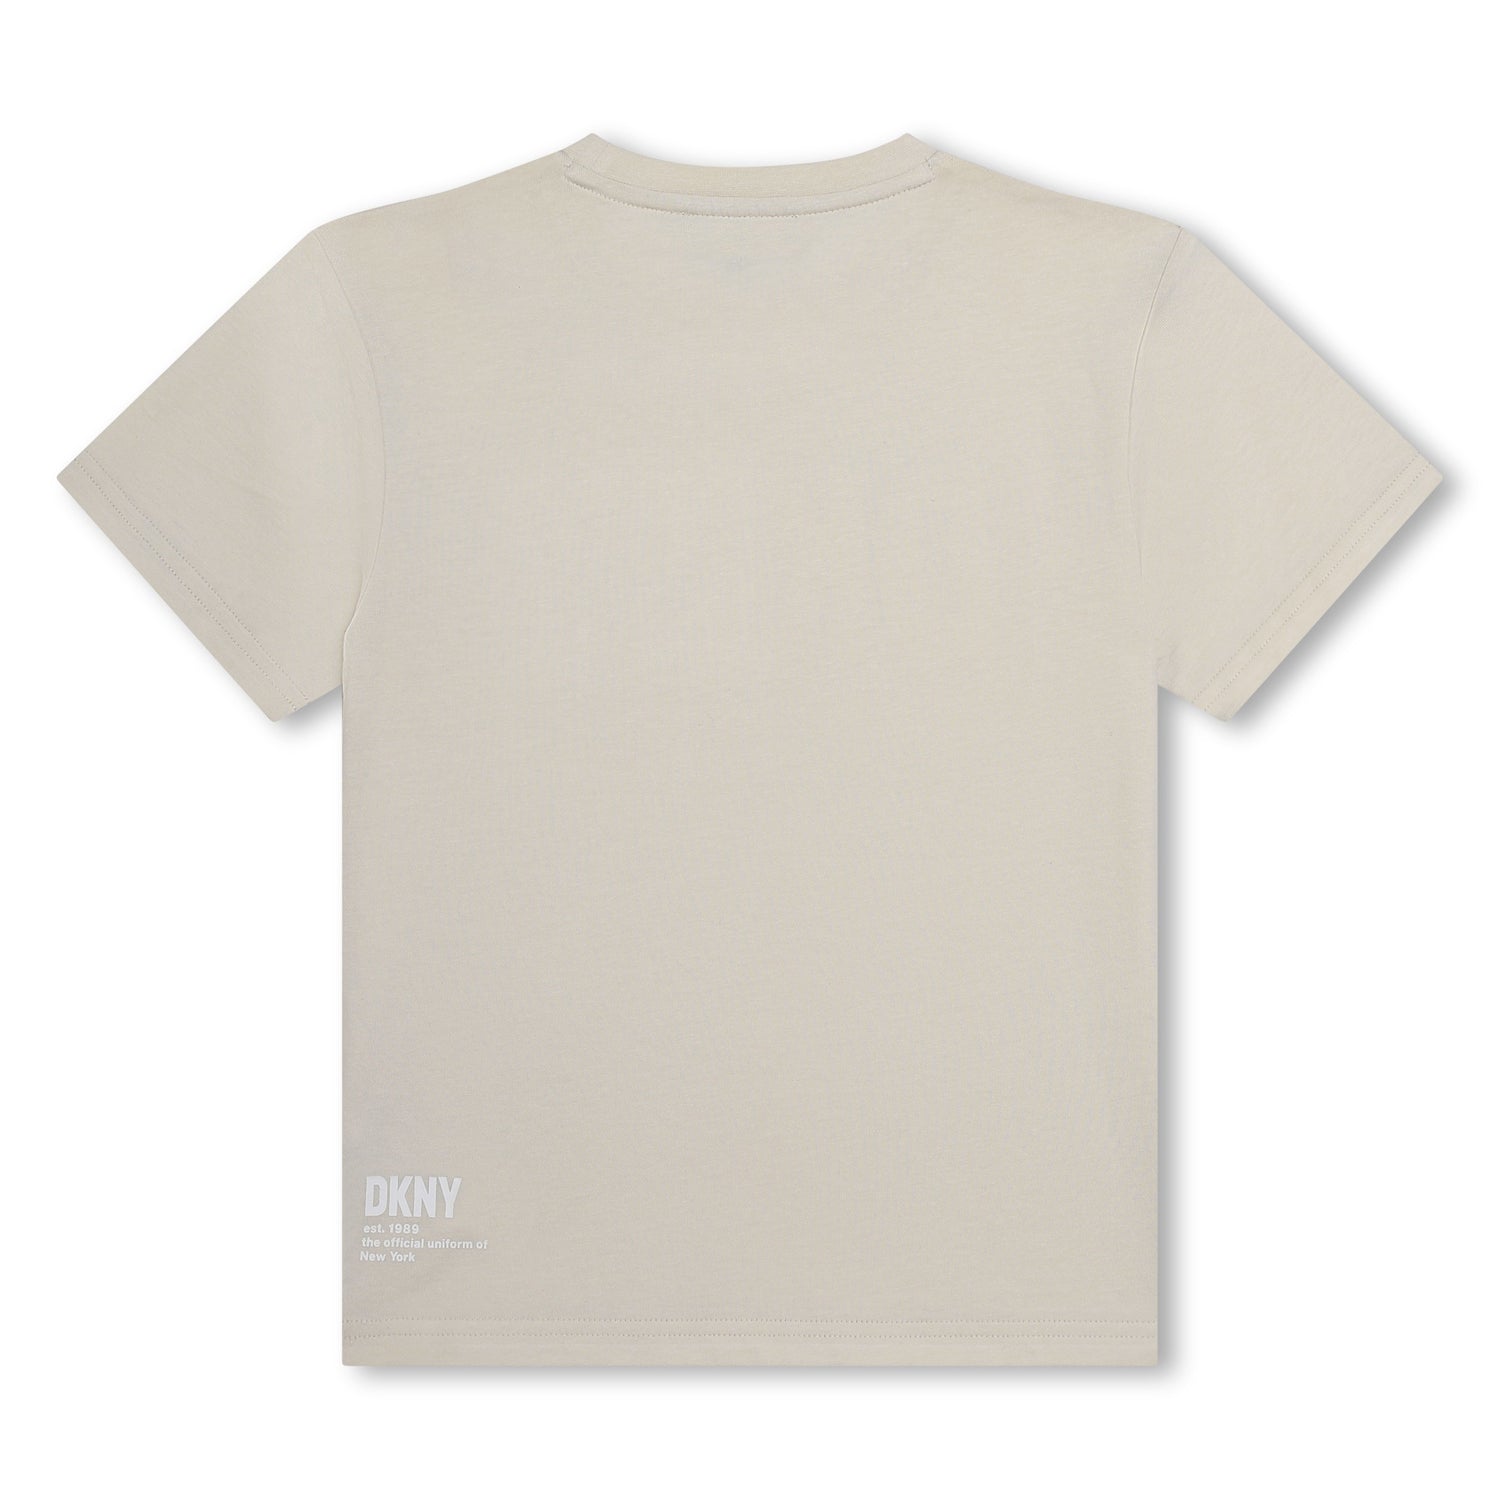 DKNY White Basic Logo Tee Shirt